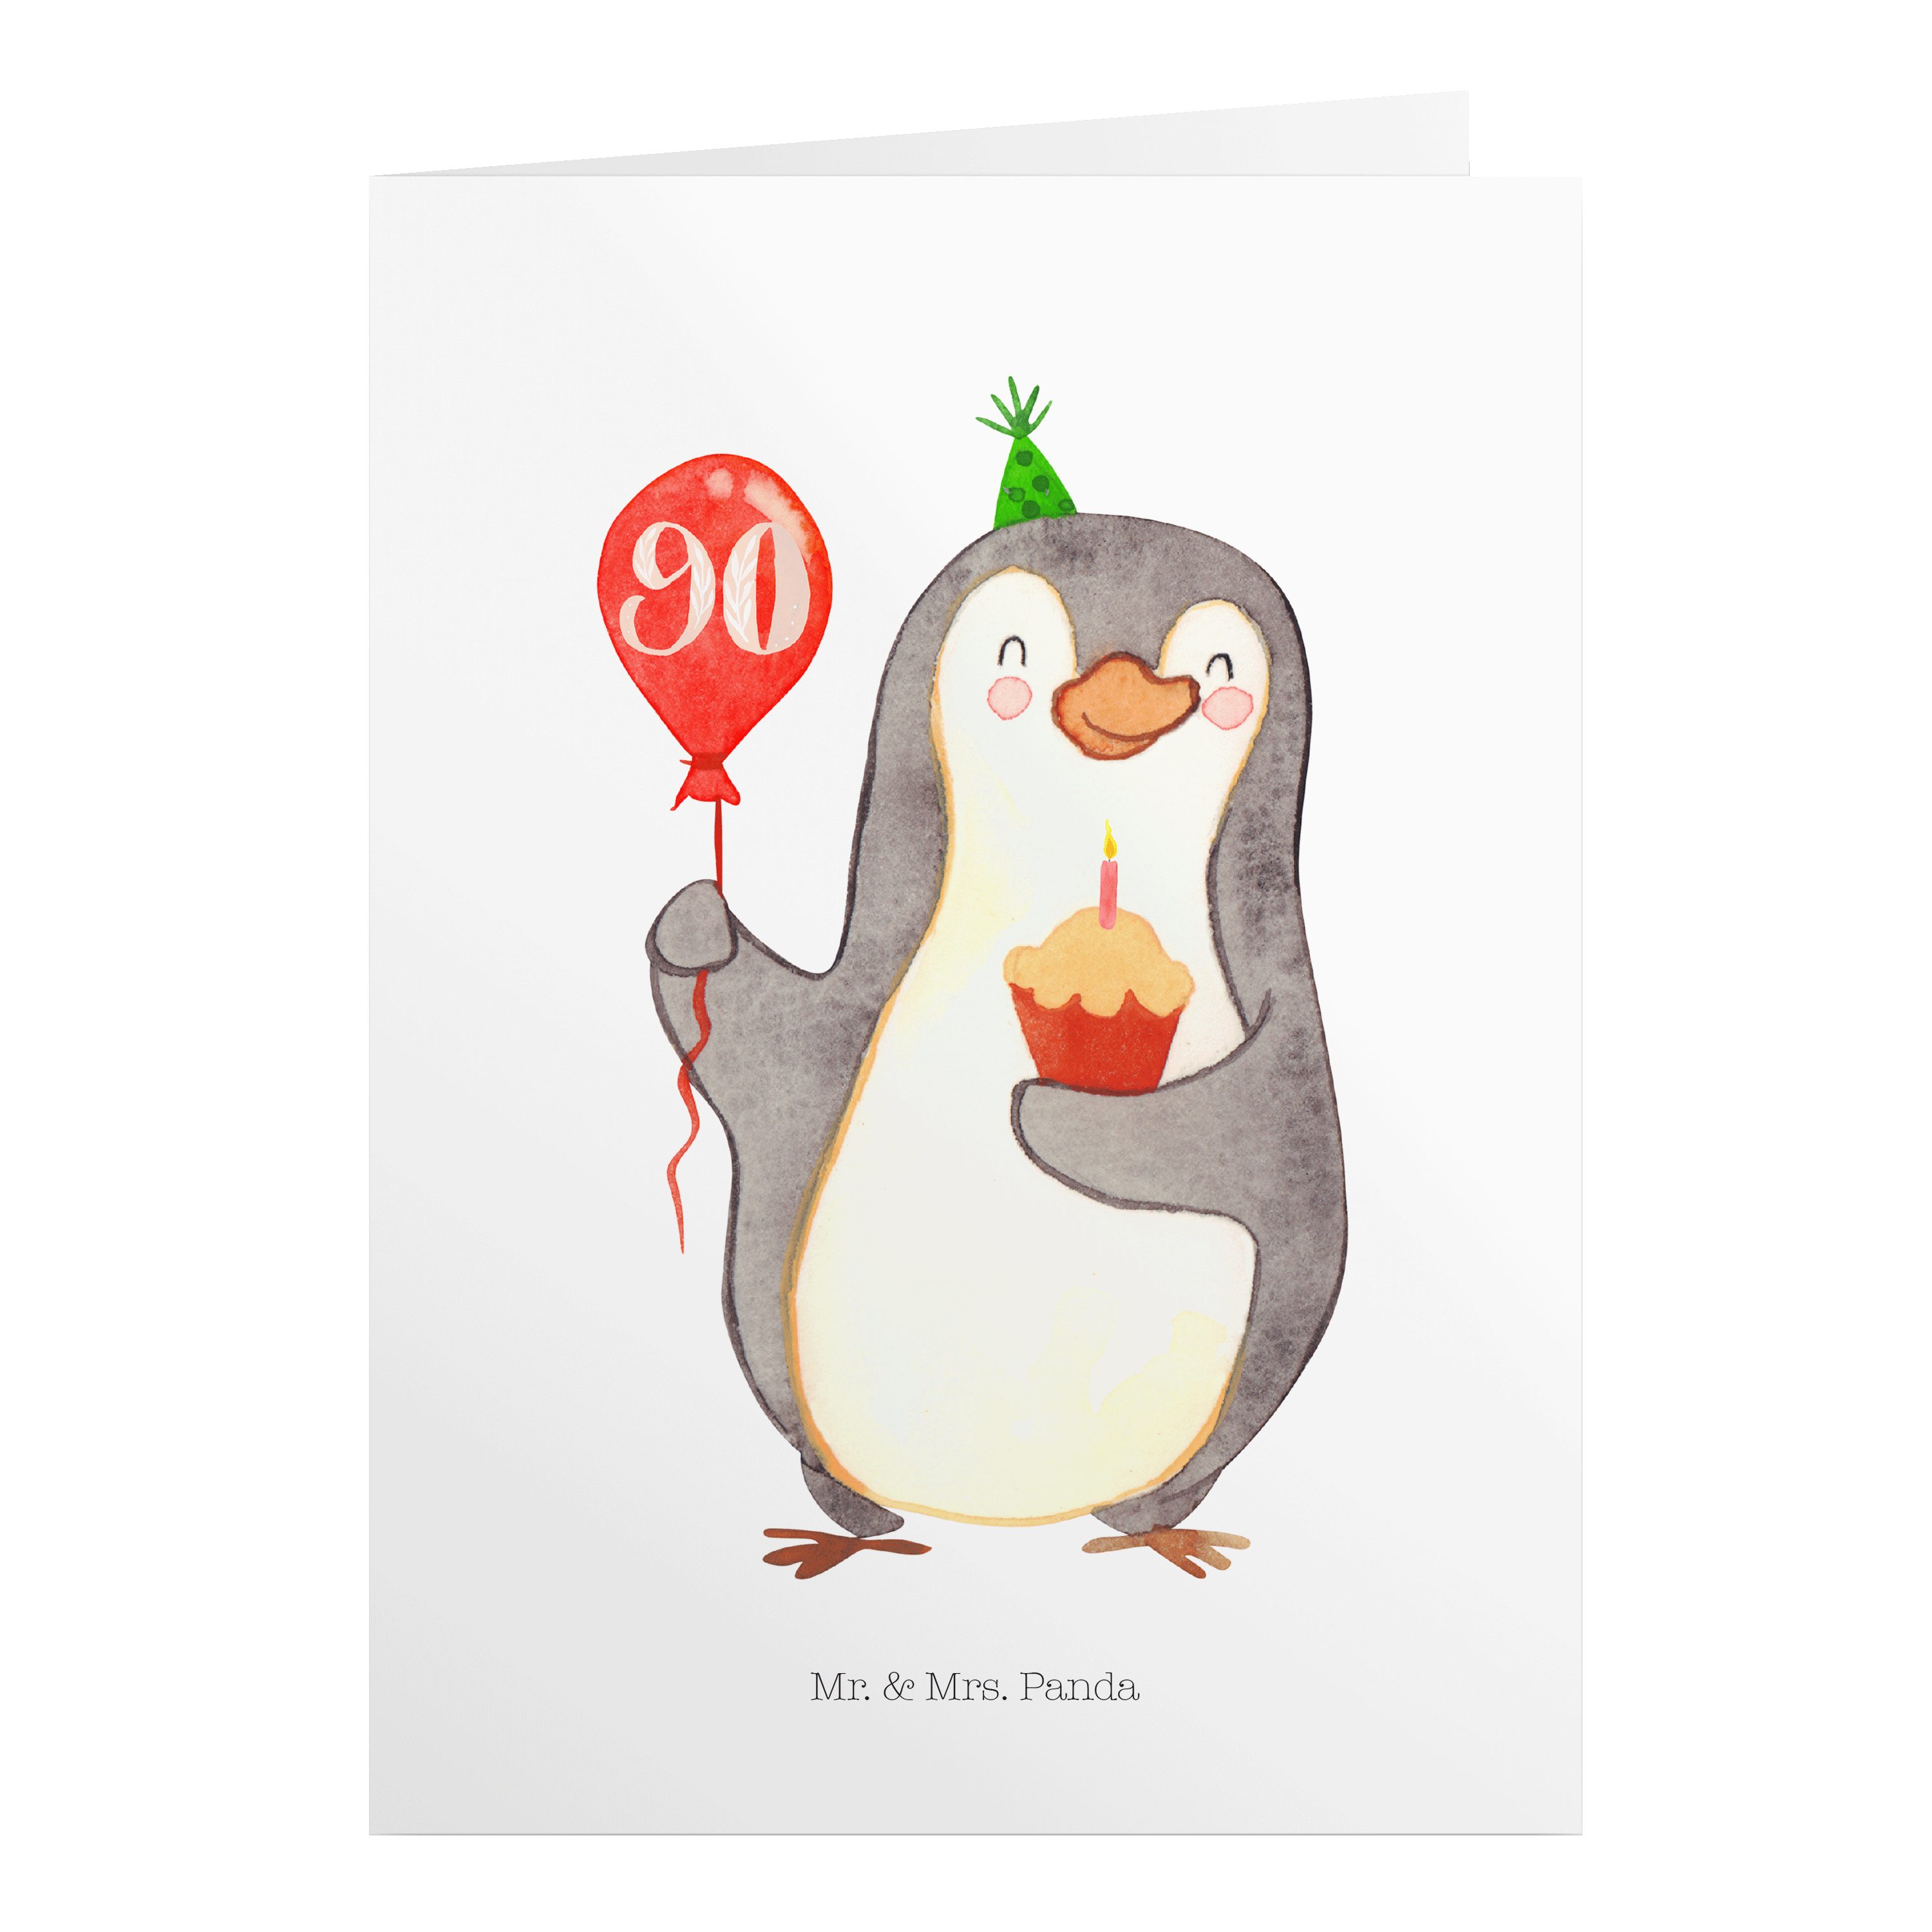 Mr. & Mrs. Panda Geburtstagskarten 90. Geburtstag Pinguin Luftballon - Weiß - Geschenk, Geburtstage, Fei